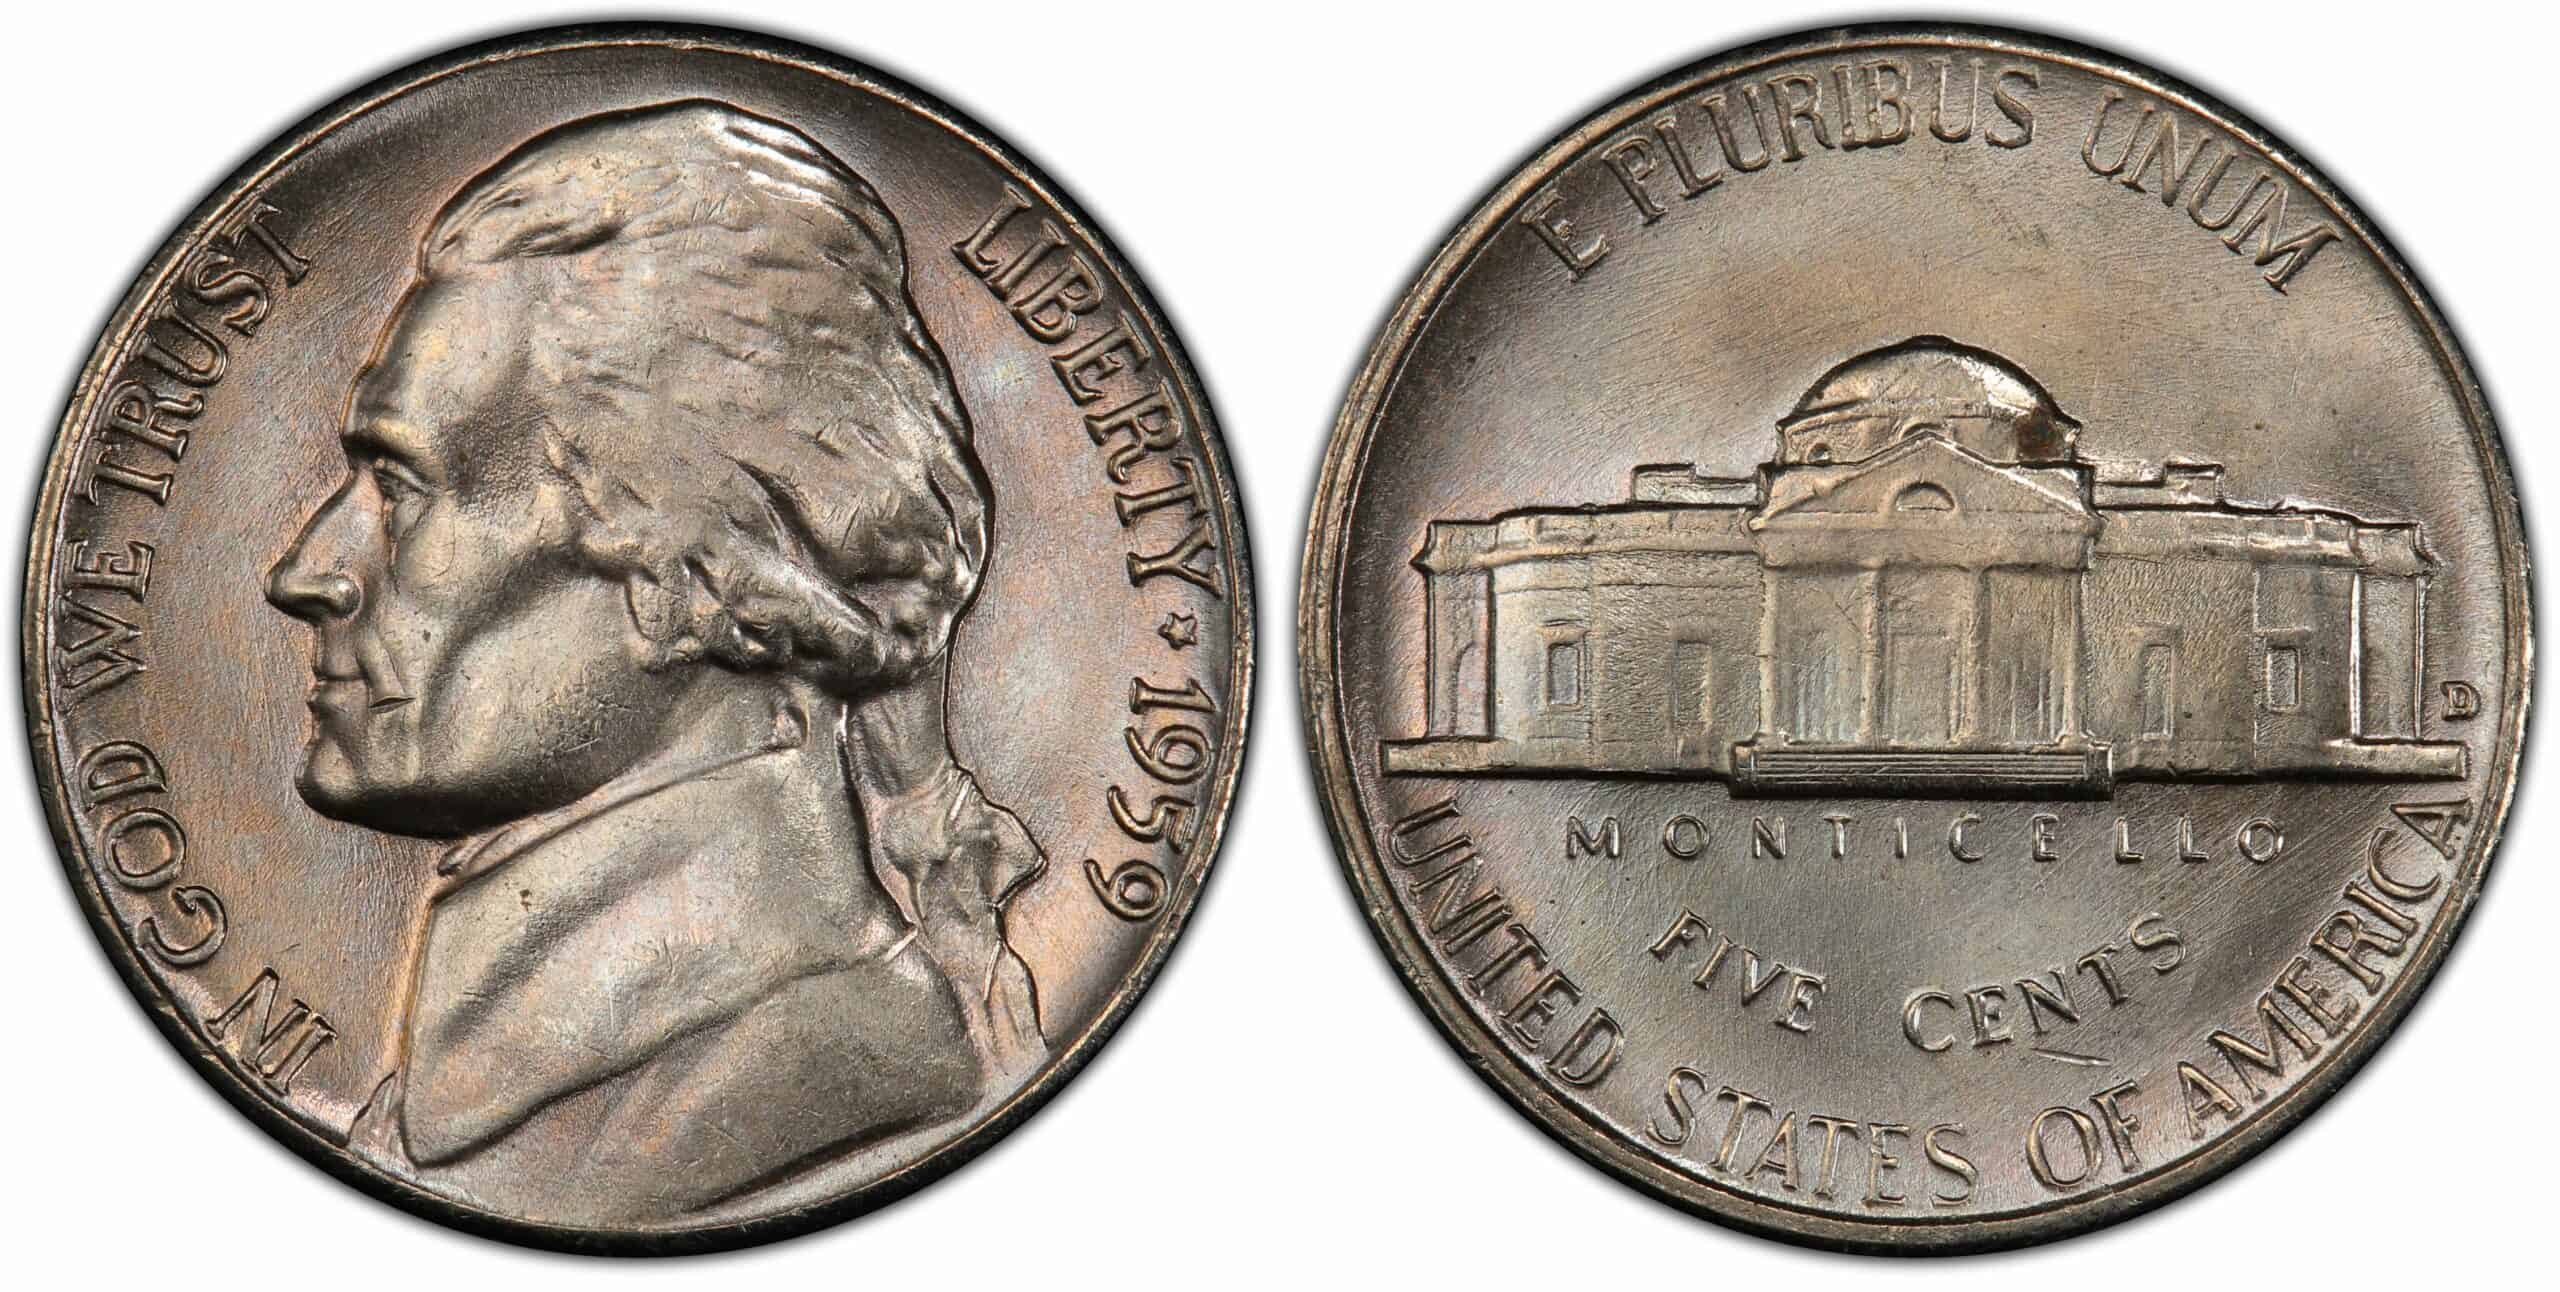 1959 D Nickel Value